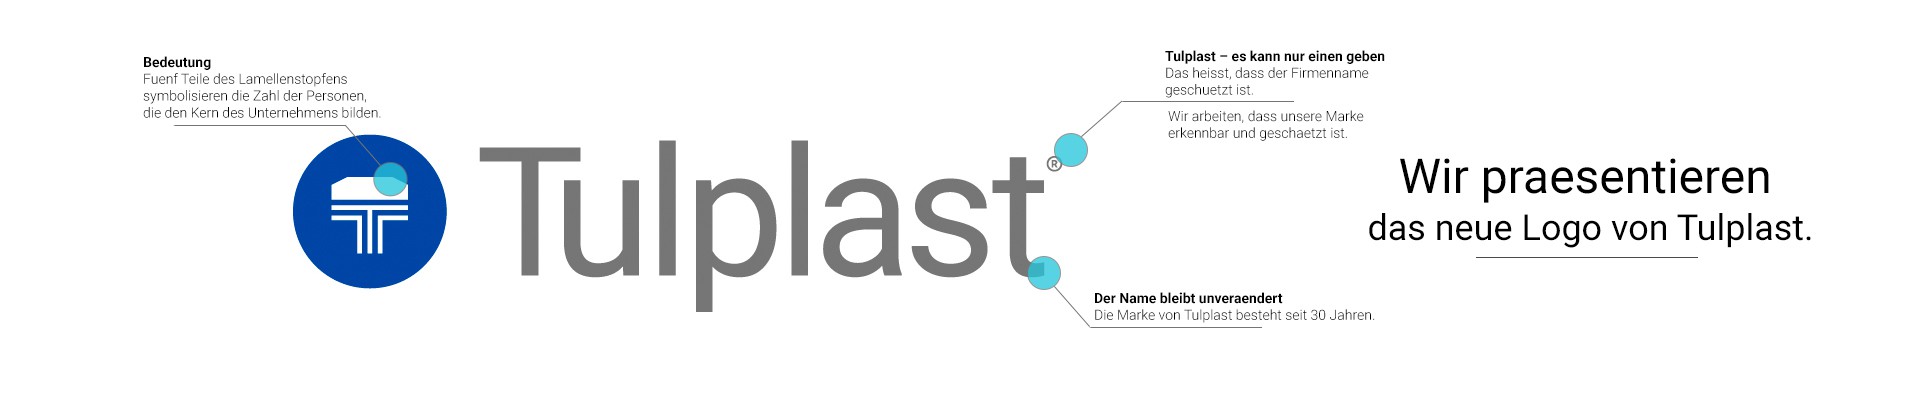 Tulplast hat seine Marke durch neues Logo und visuele Identifikation erneuert.